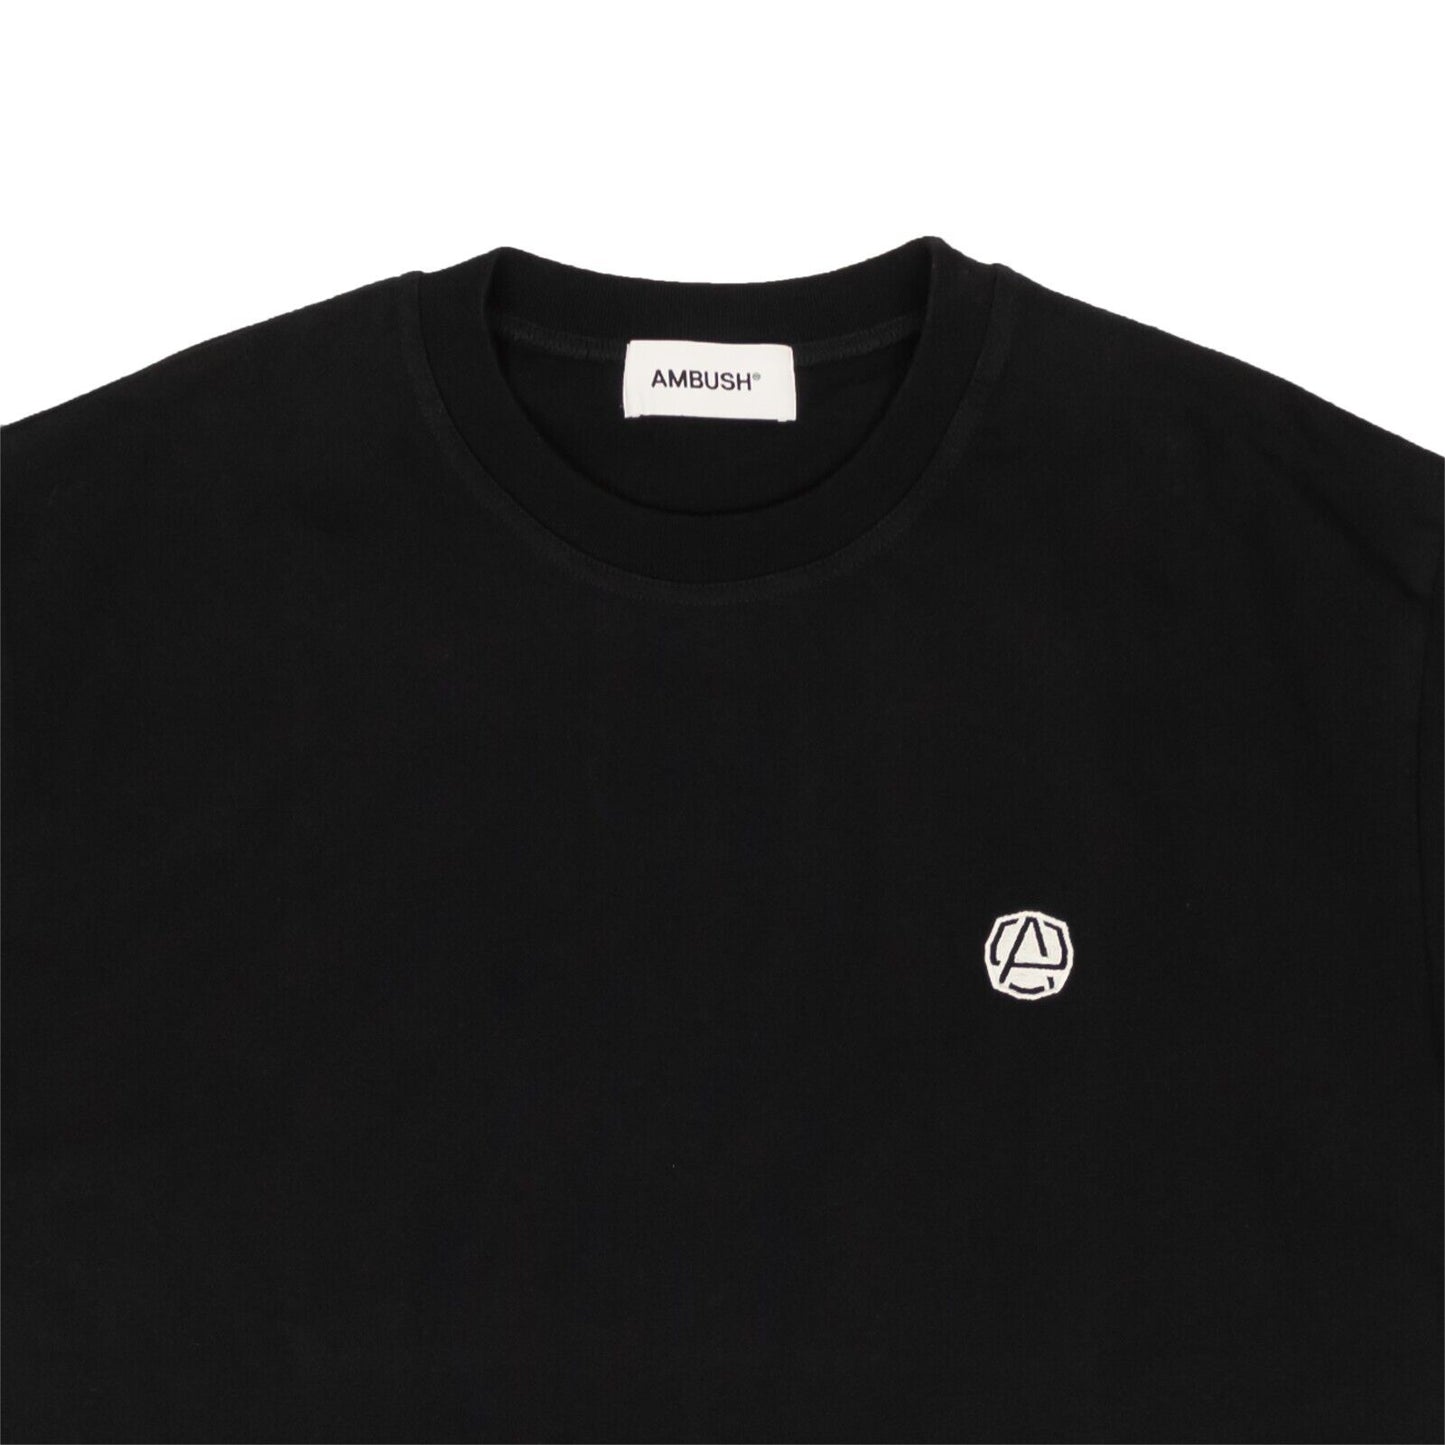 Ambush Emblem Basic Short Sleeve T-Shirt - Black